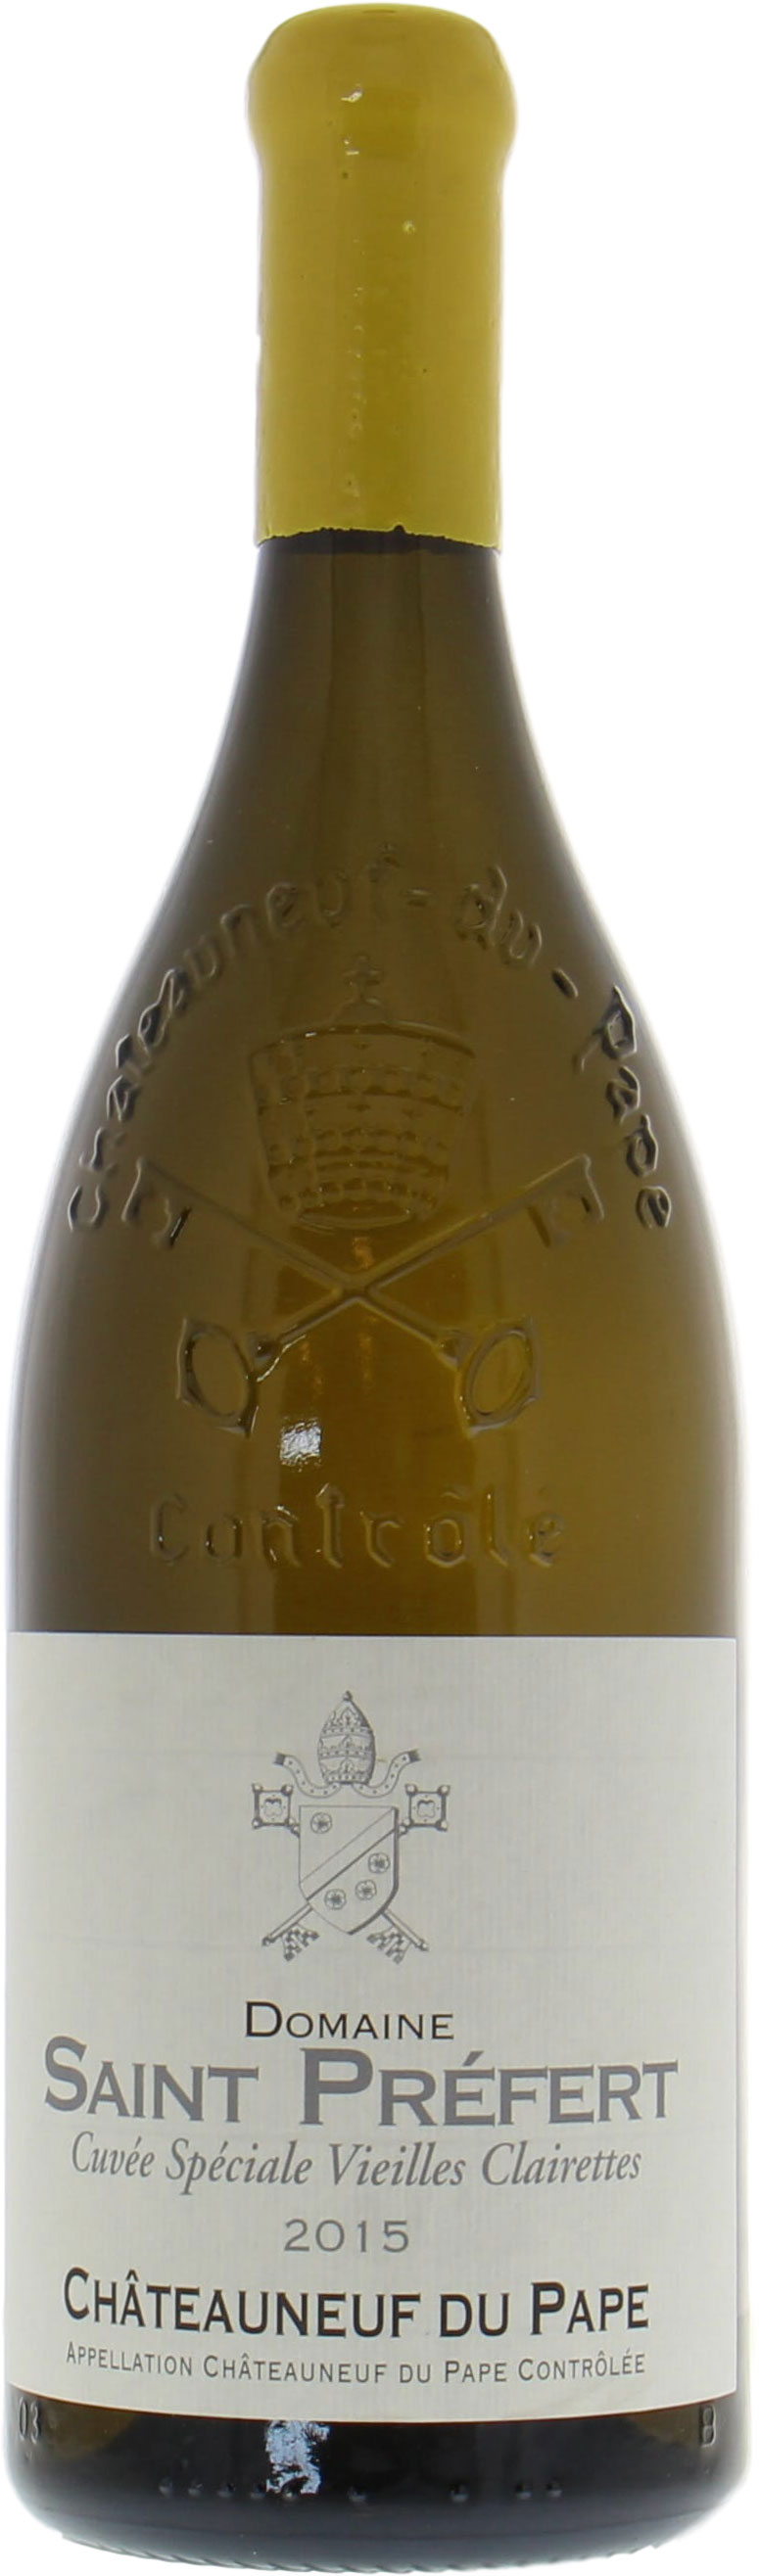 Domaine de Saint-Prefert - Chateauneuf du Pape Chateauneuf du Pape Vieilles Vignes de Clairette Blanc 2015 Perfect